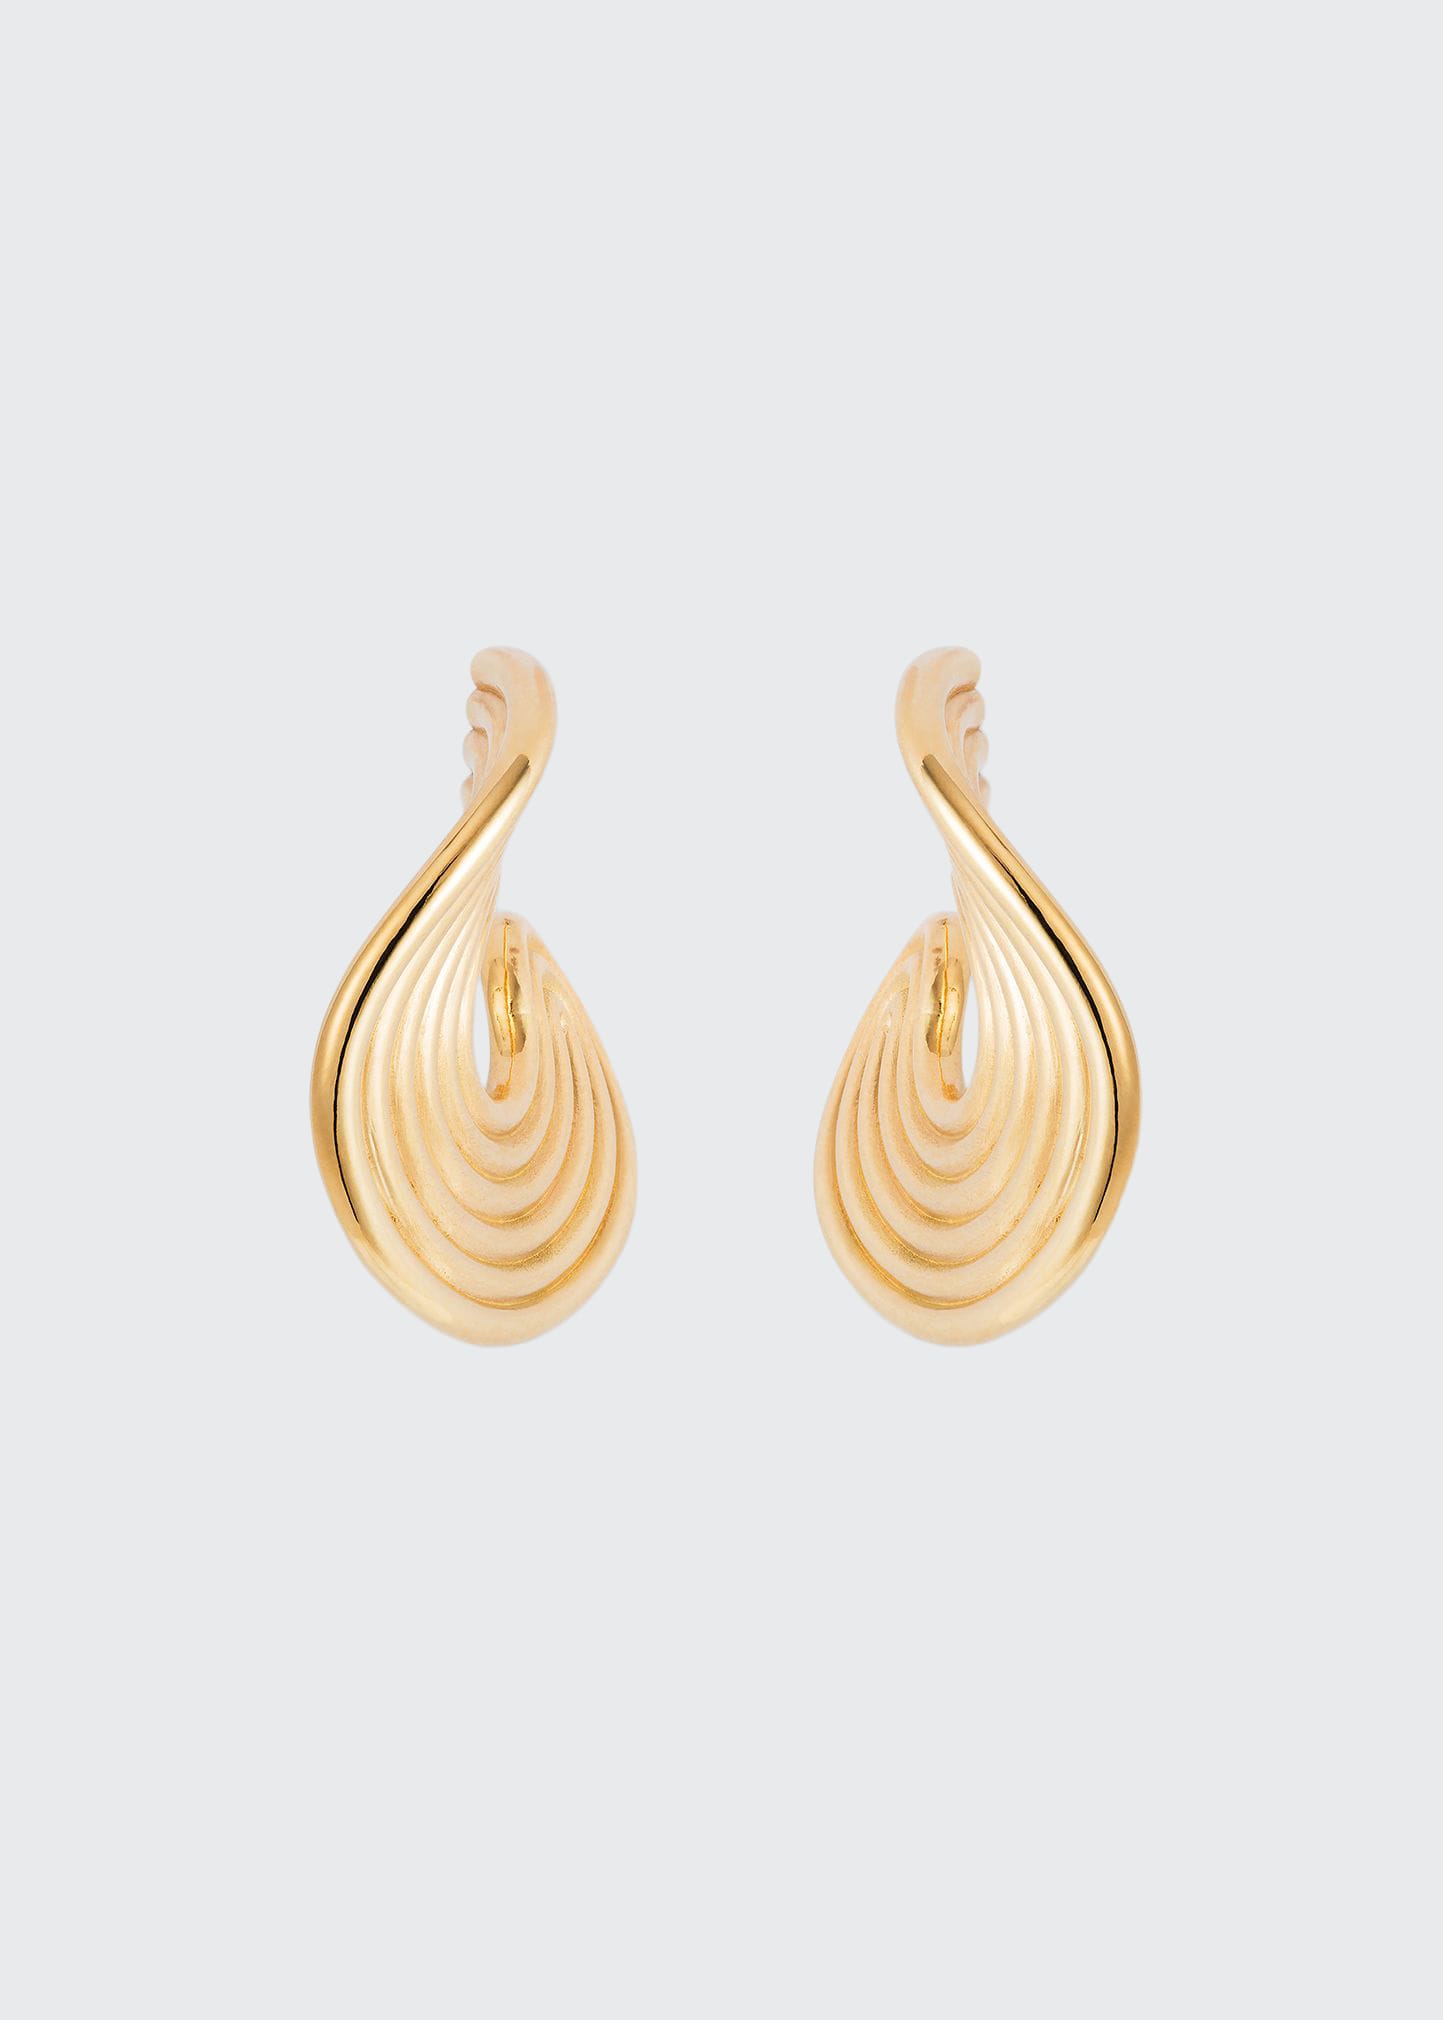 Fernando Jorge Stream Lines Flat Hoop Earrings in 18k Yellow Gold